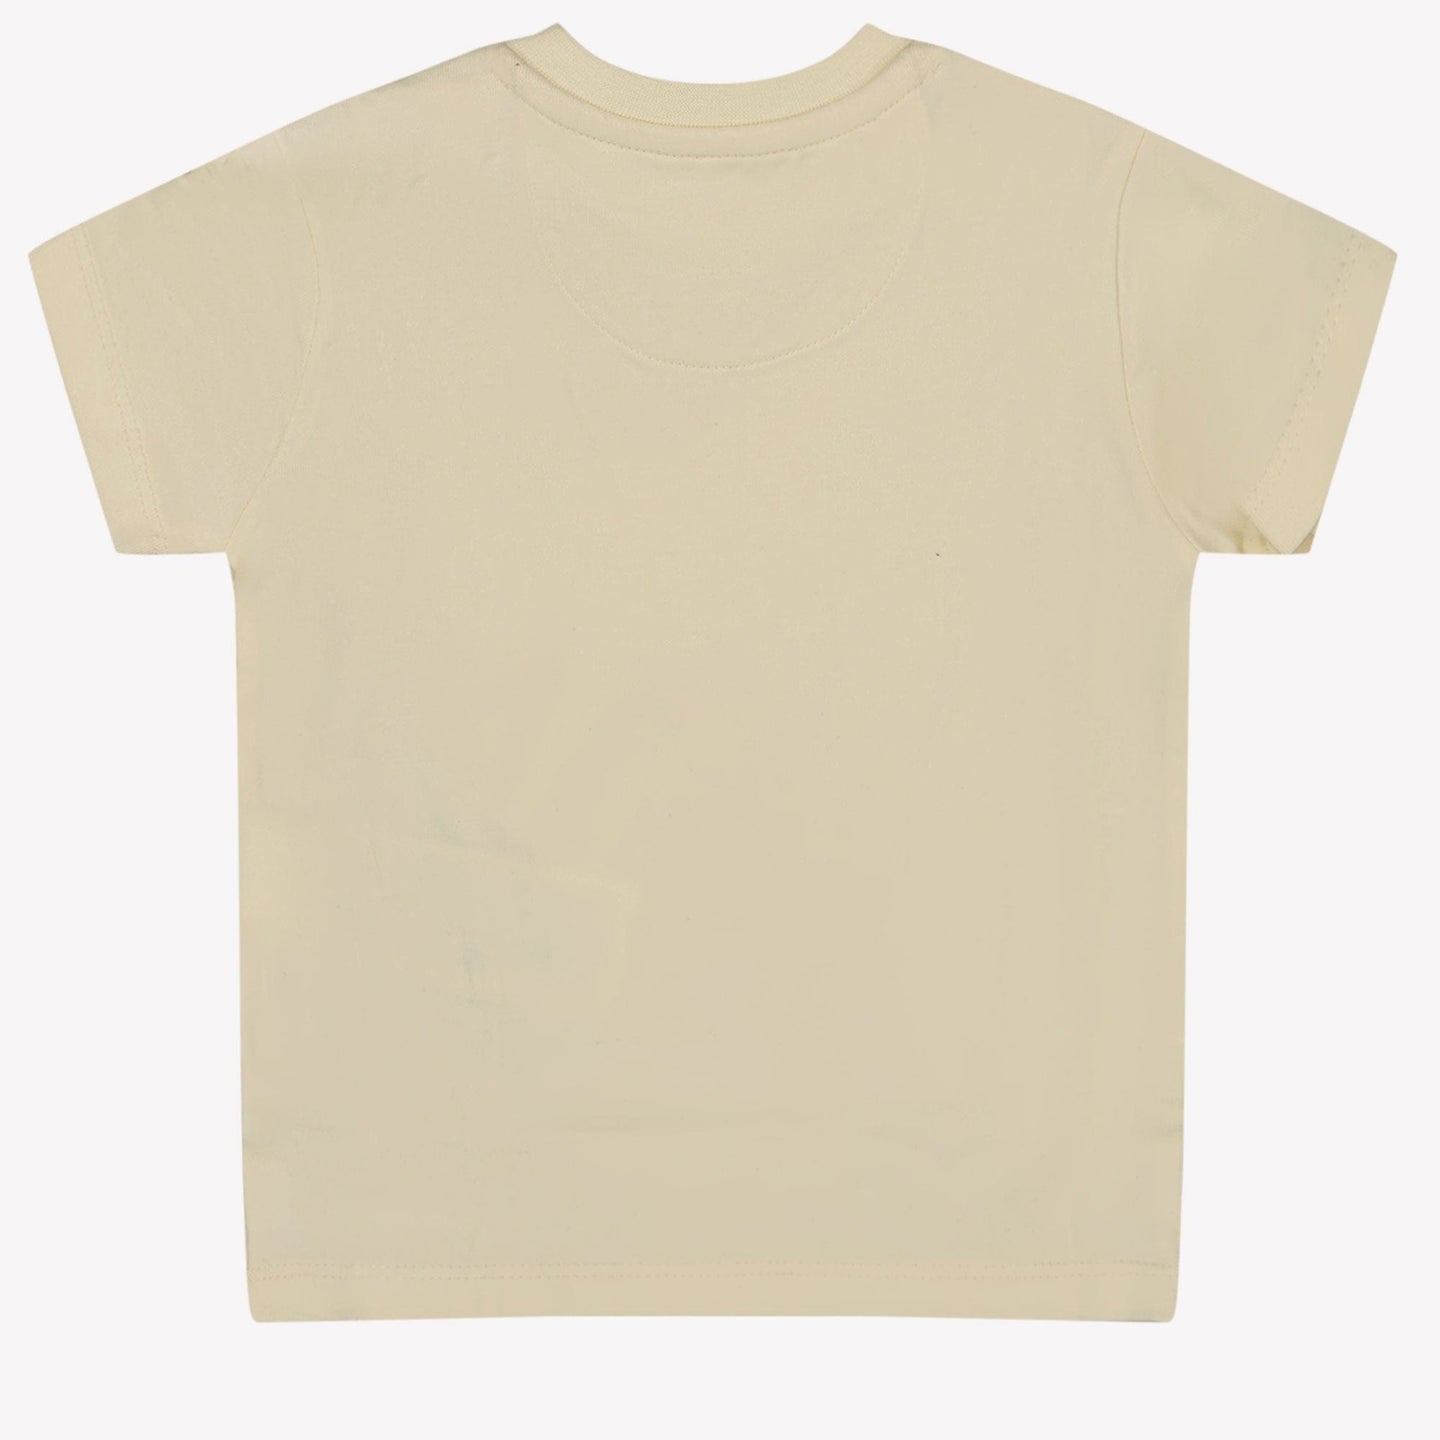 Calvin Klein Baby Jongens T-shirt Beige 62